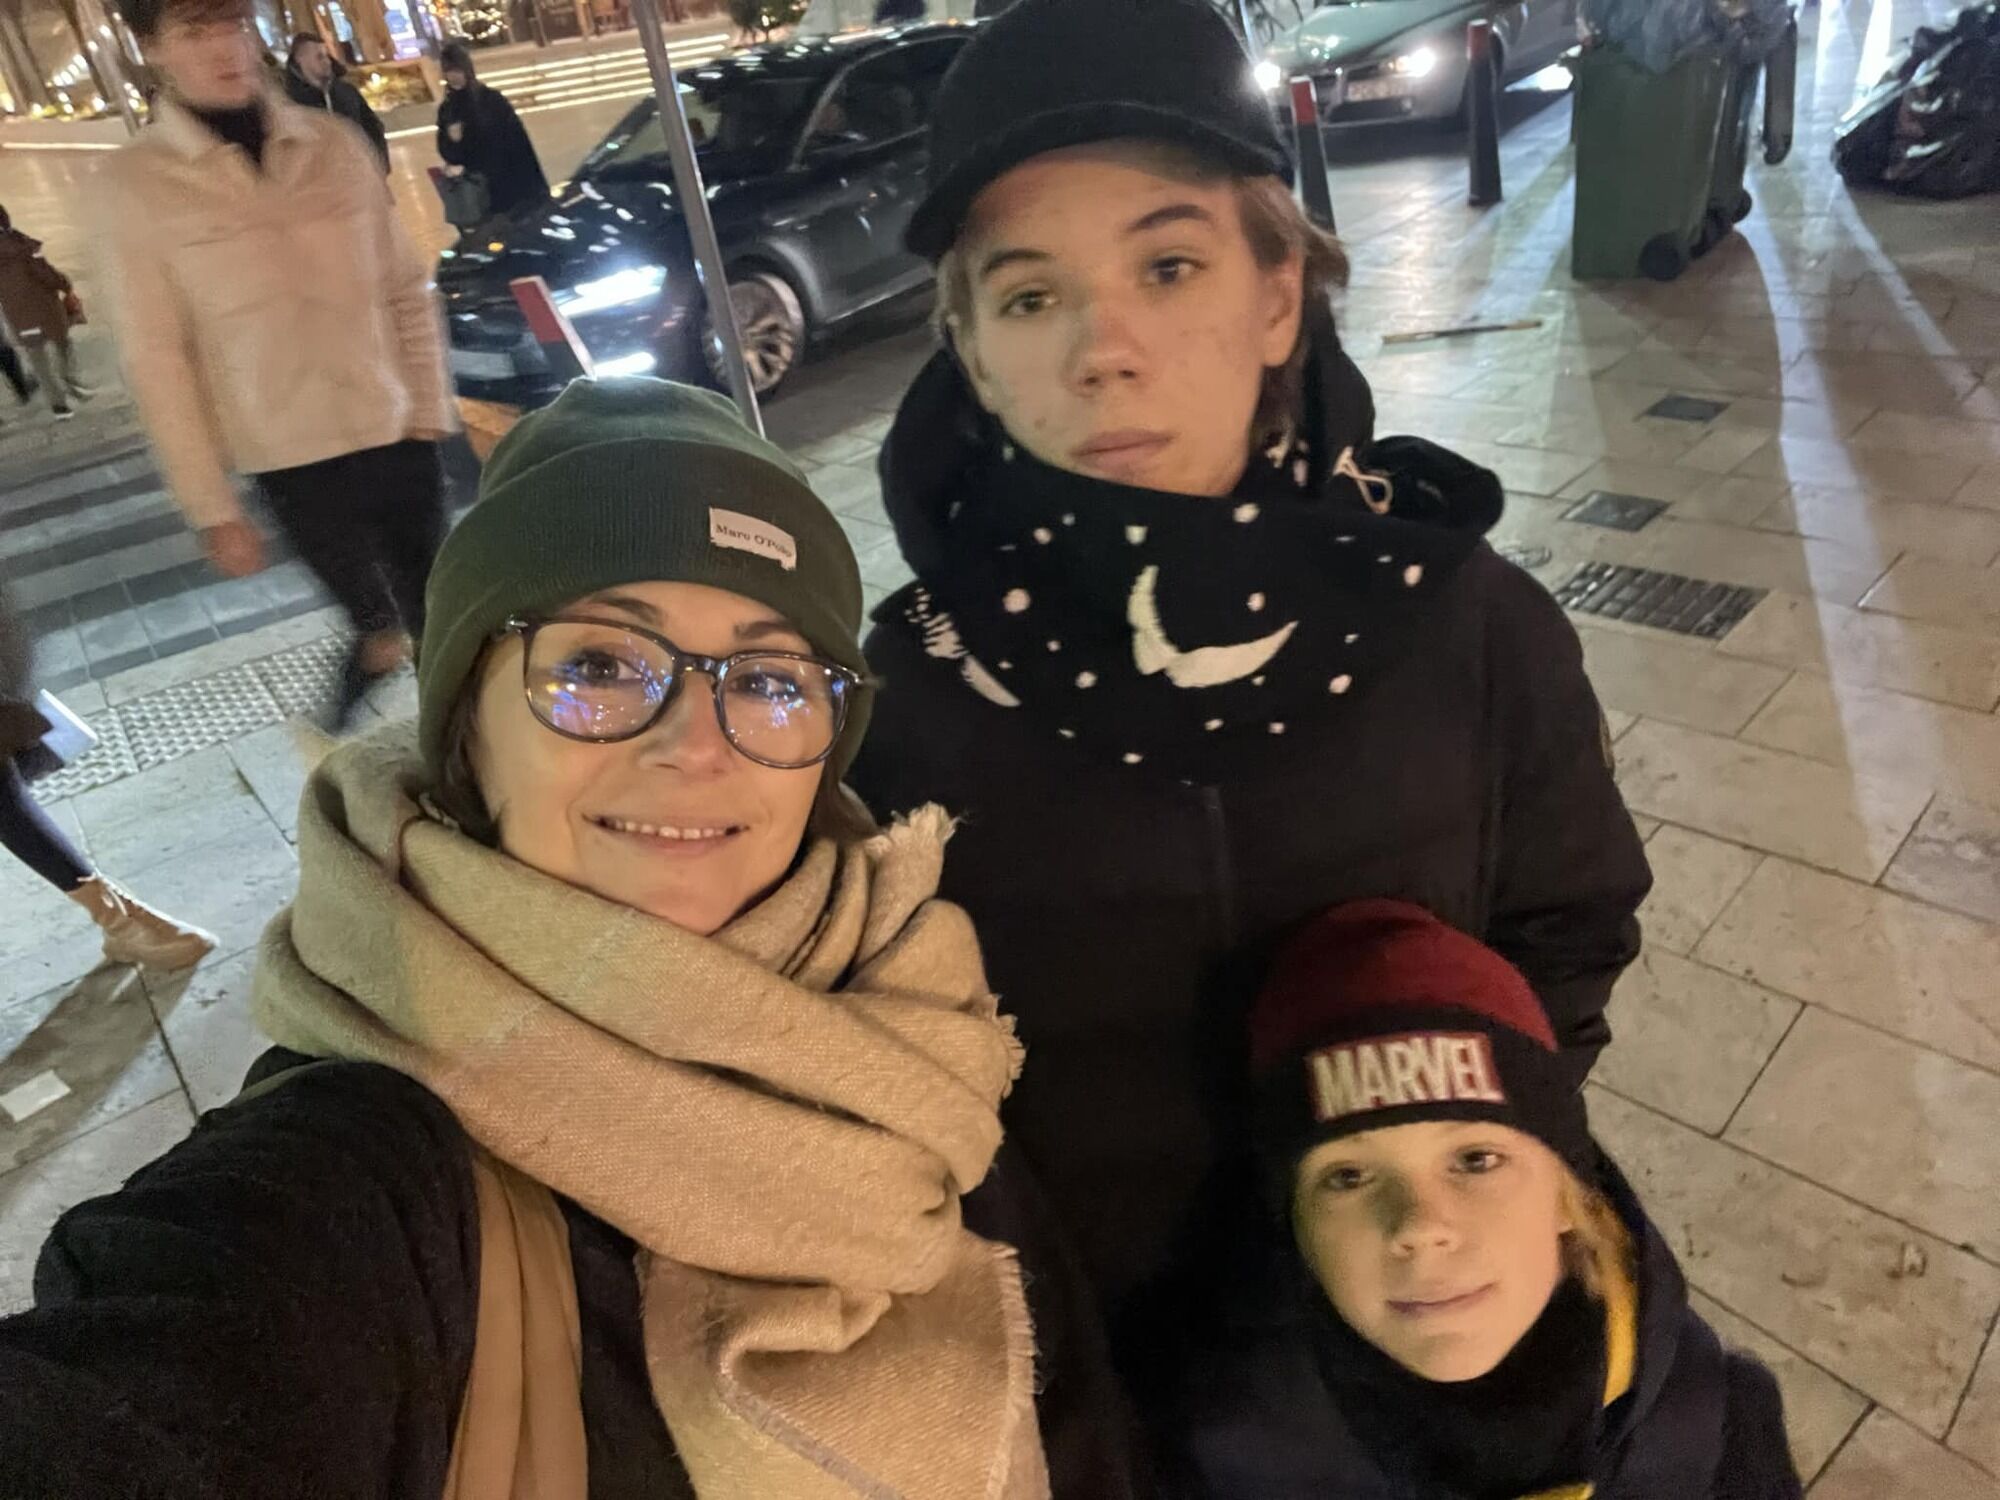 Актриса Даша Малахова заявила, что будет судиться с отцом своих детей: за жесткое нарушение закона